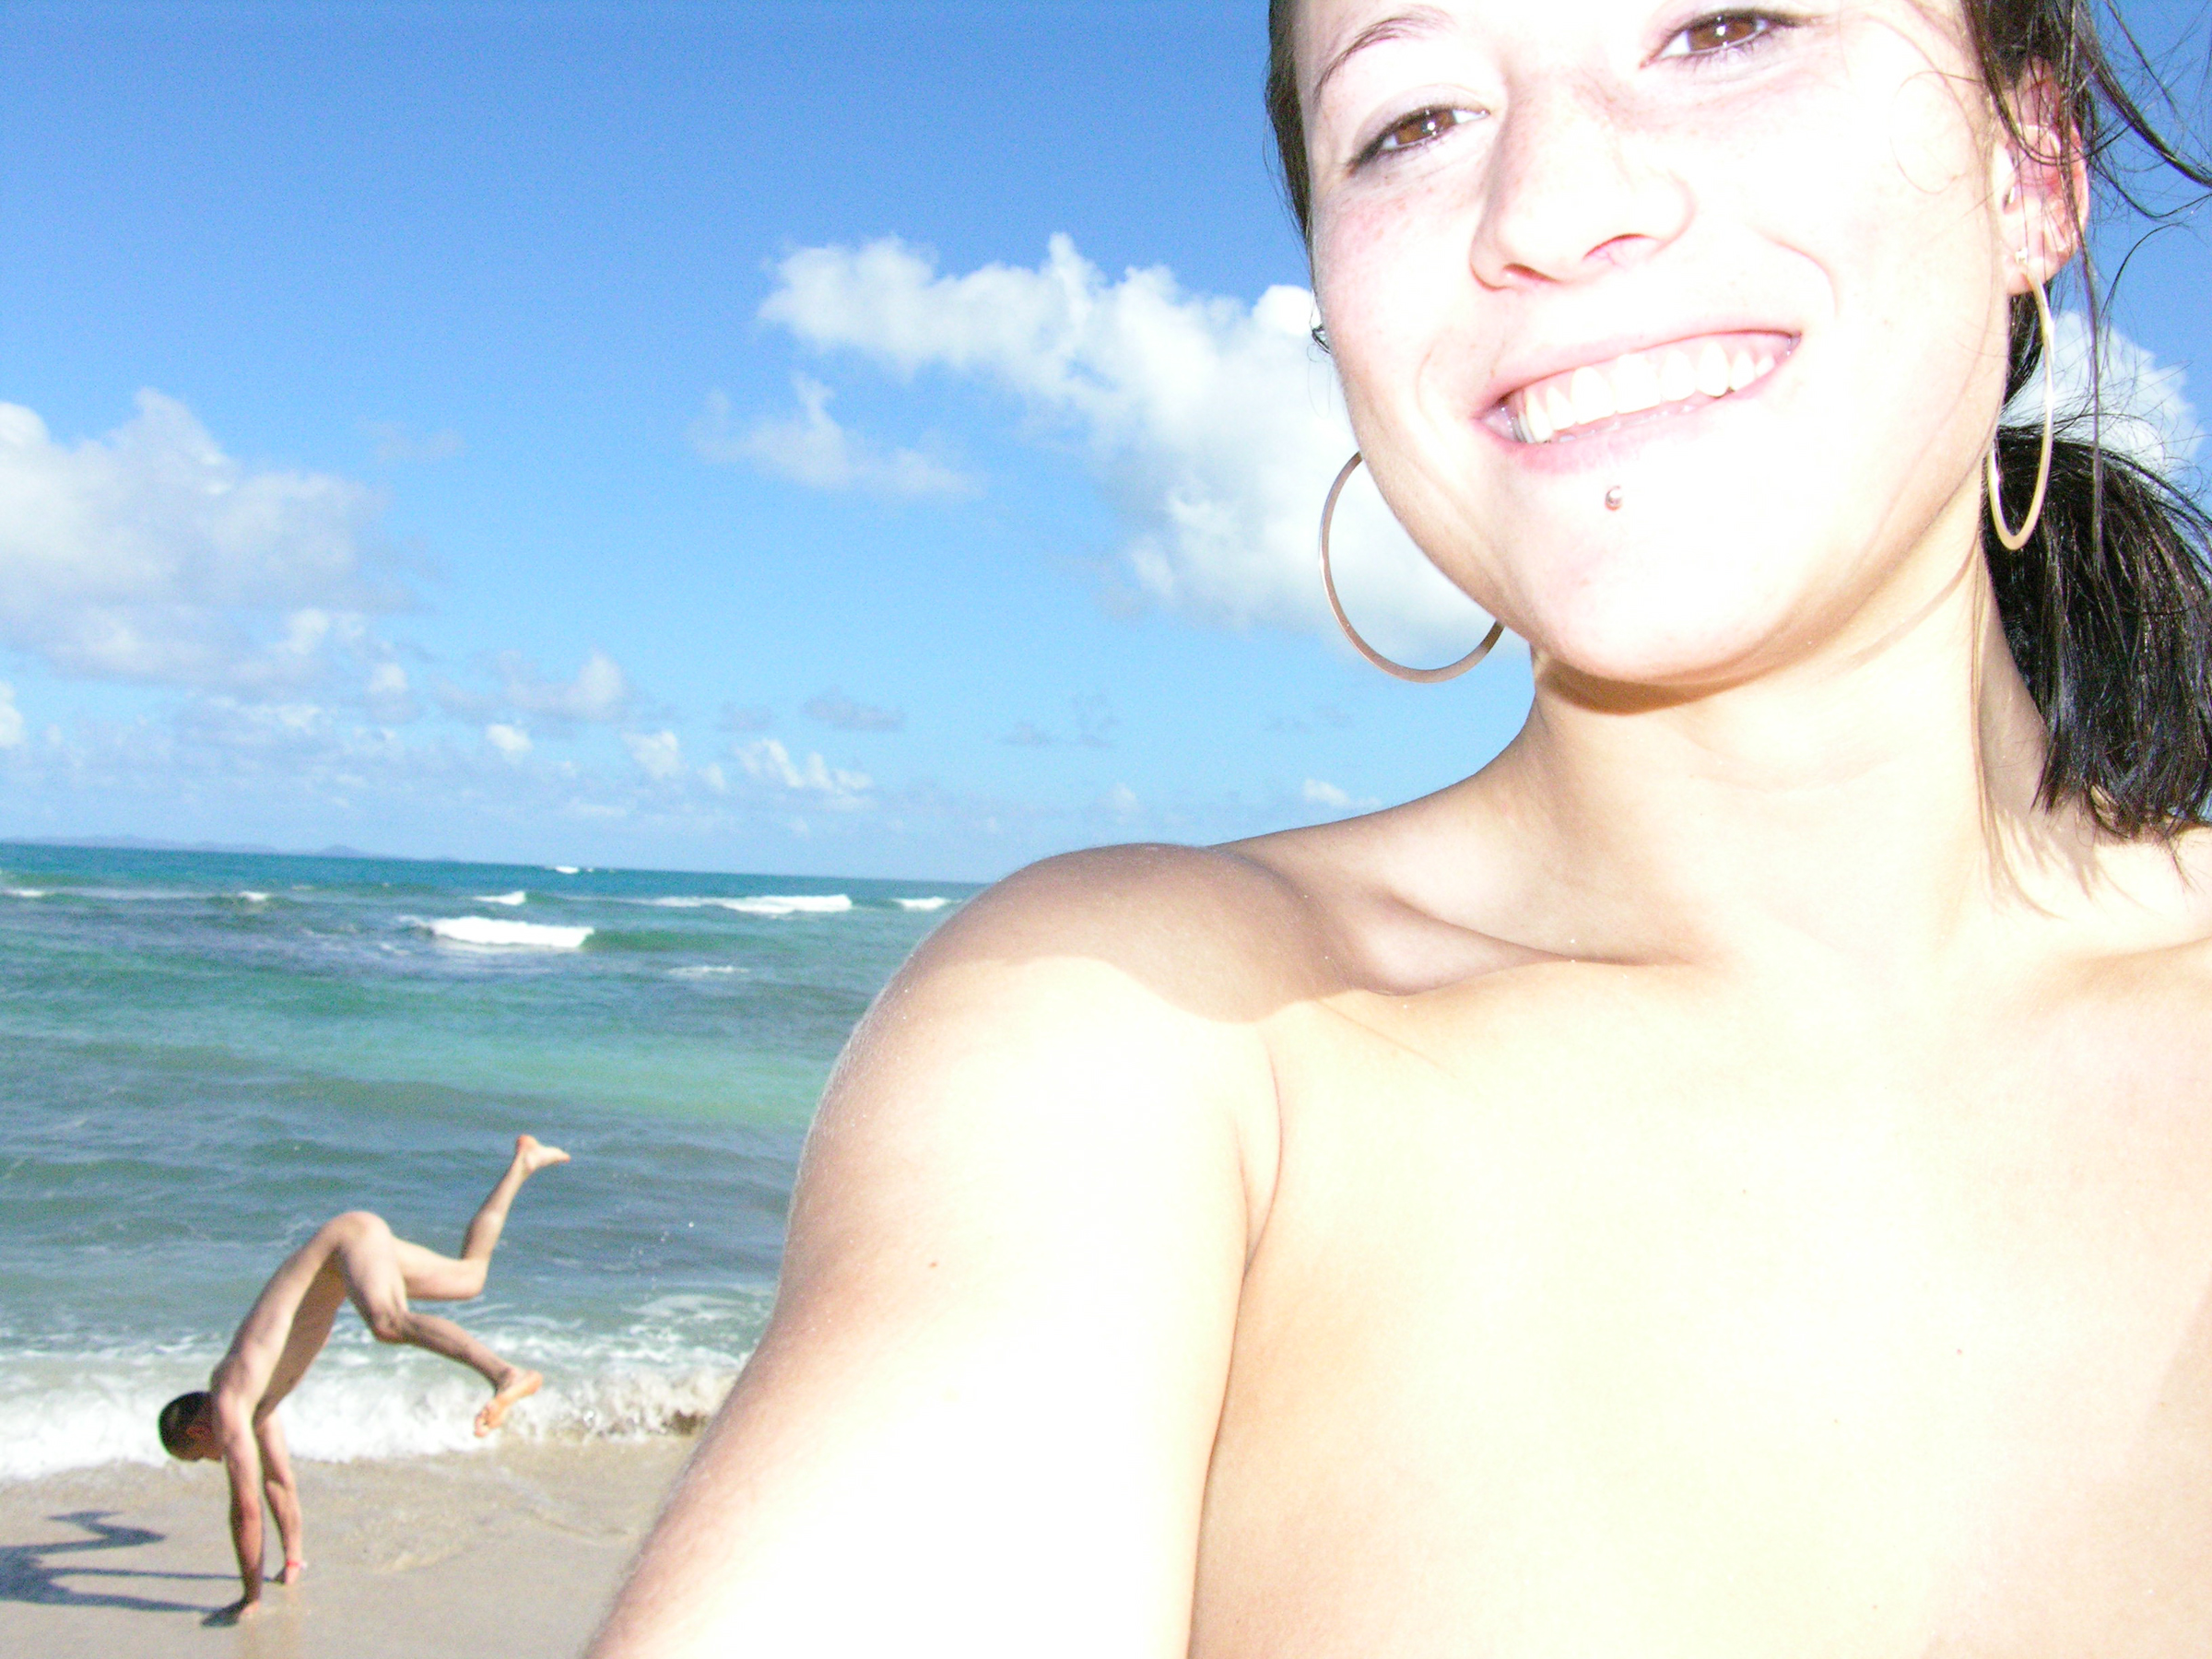 La Playa, Puerto Rico, 2006